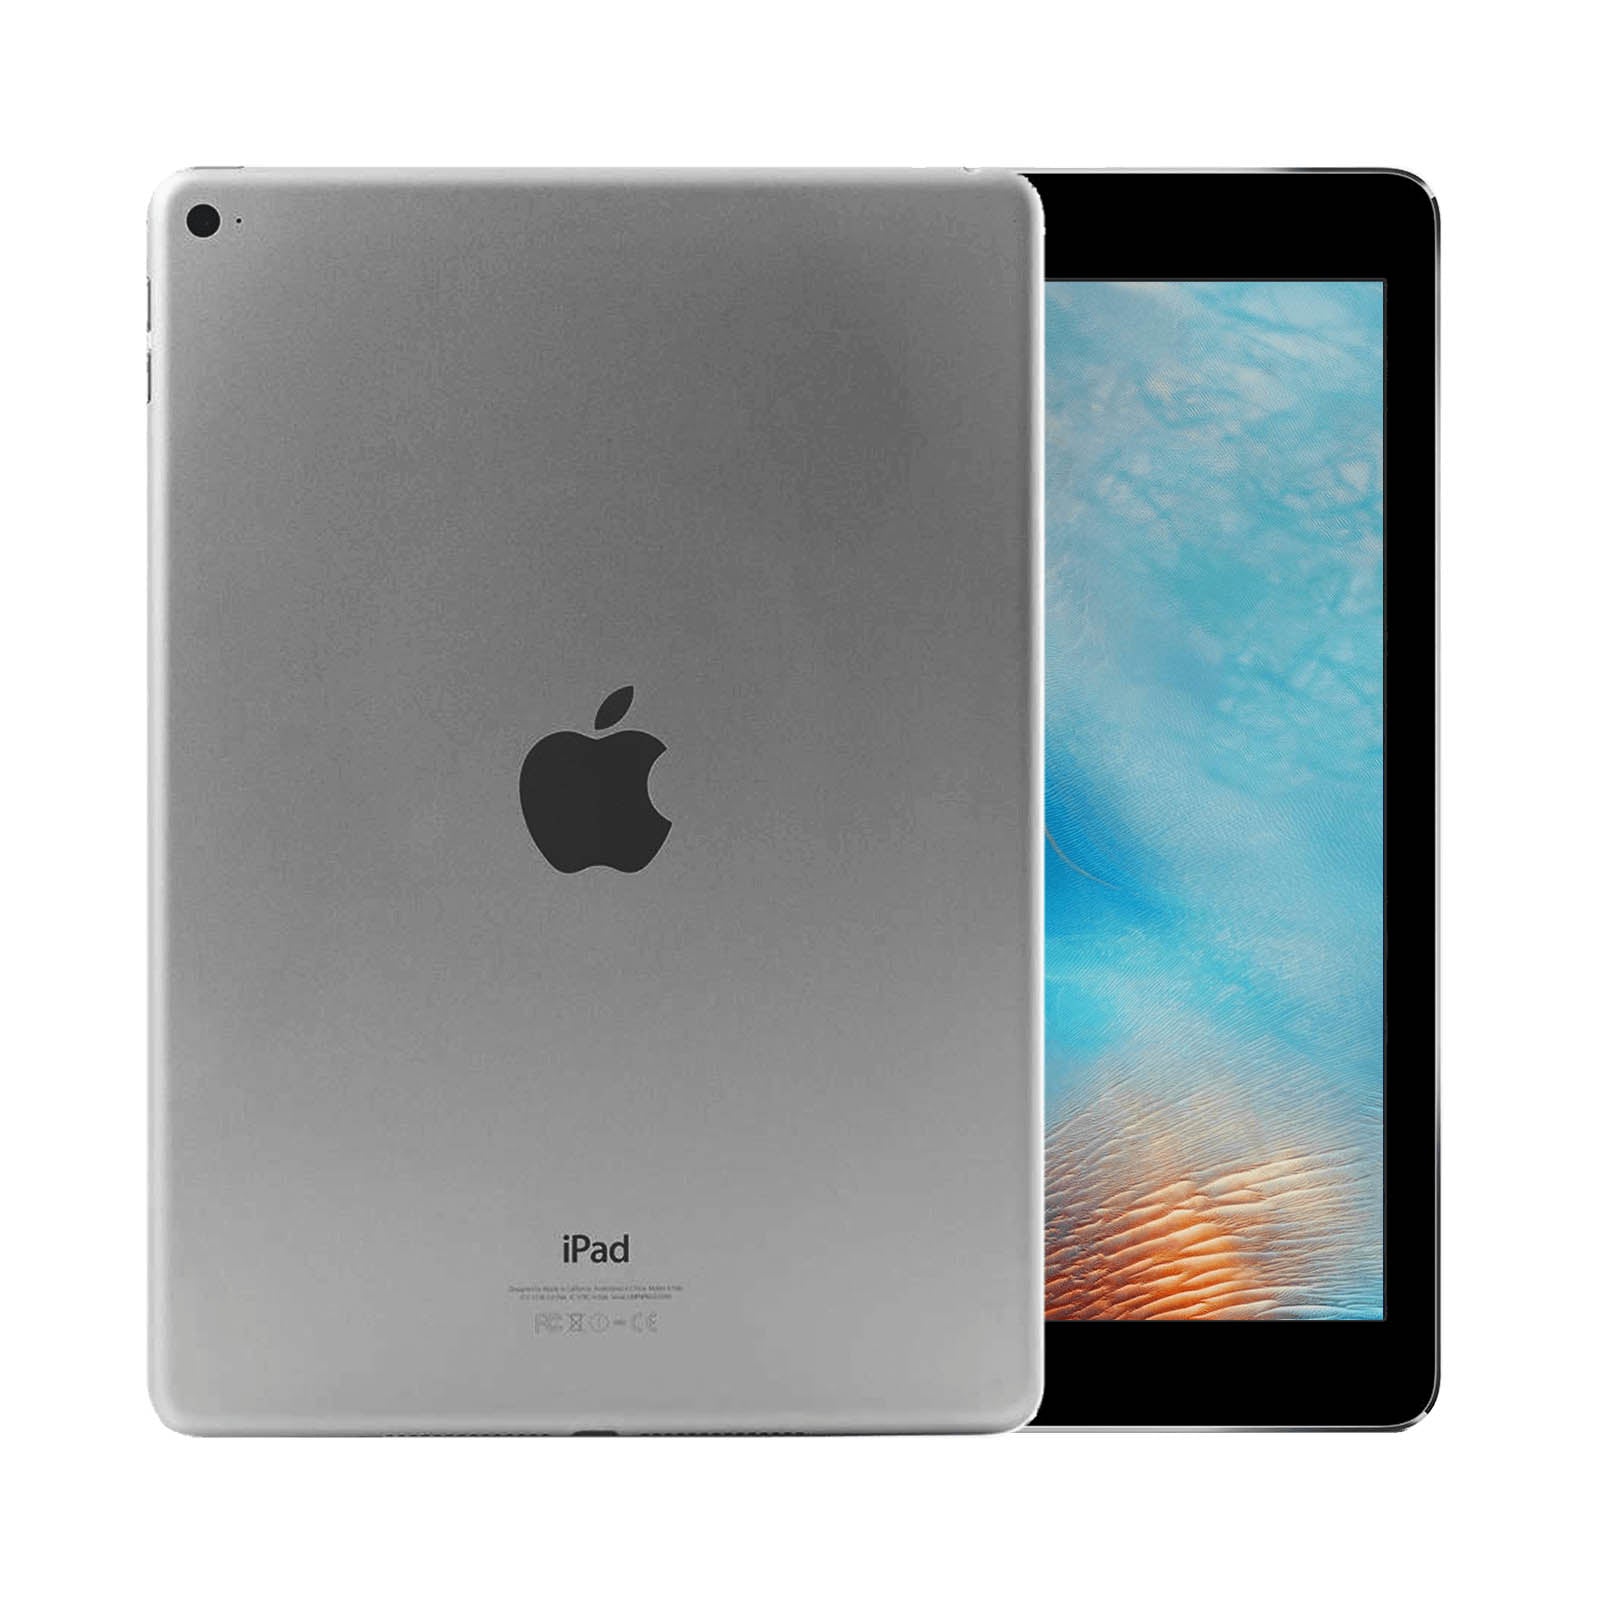 Ristrutturatoished Apple iPad Air 2 64GB WiFi Grigio Siderale Come Nuovo